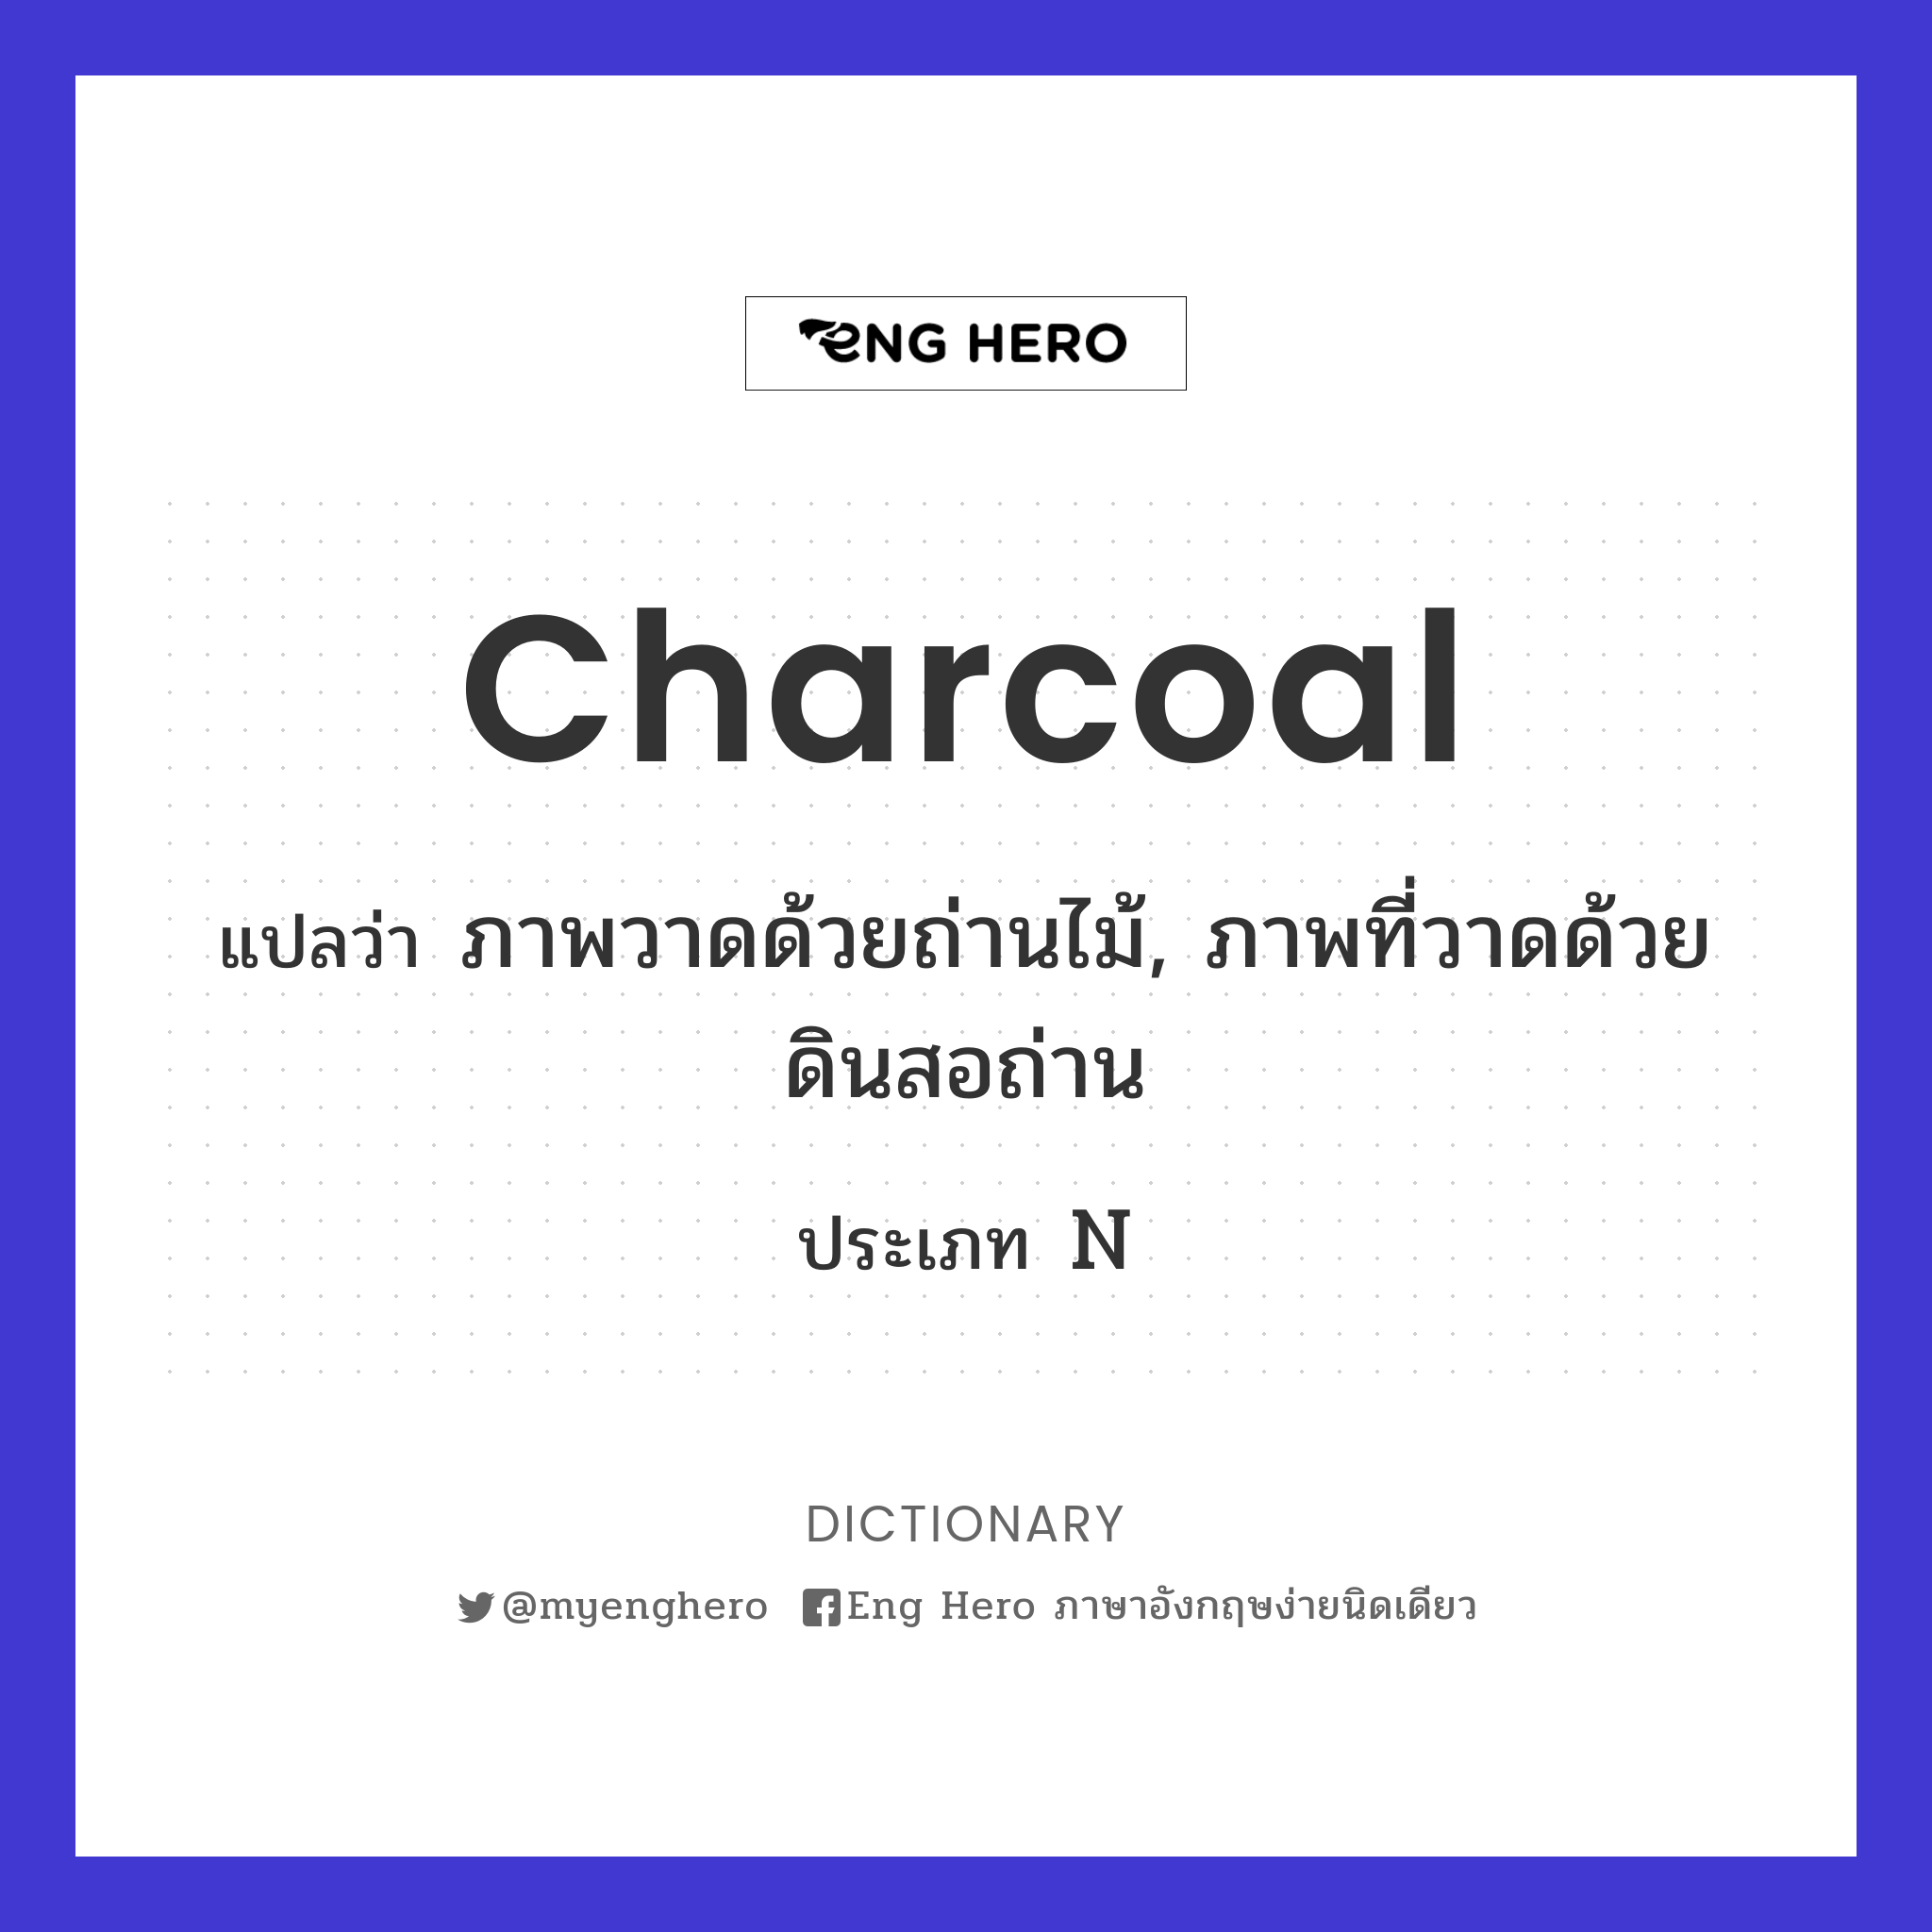 charcoal